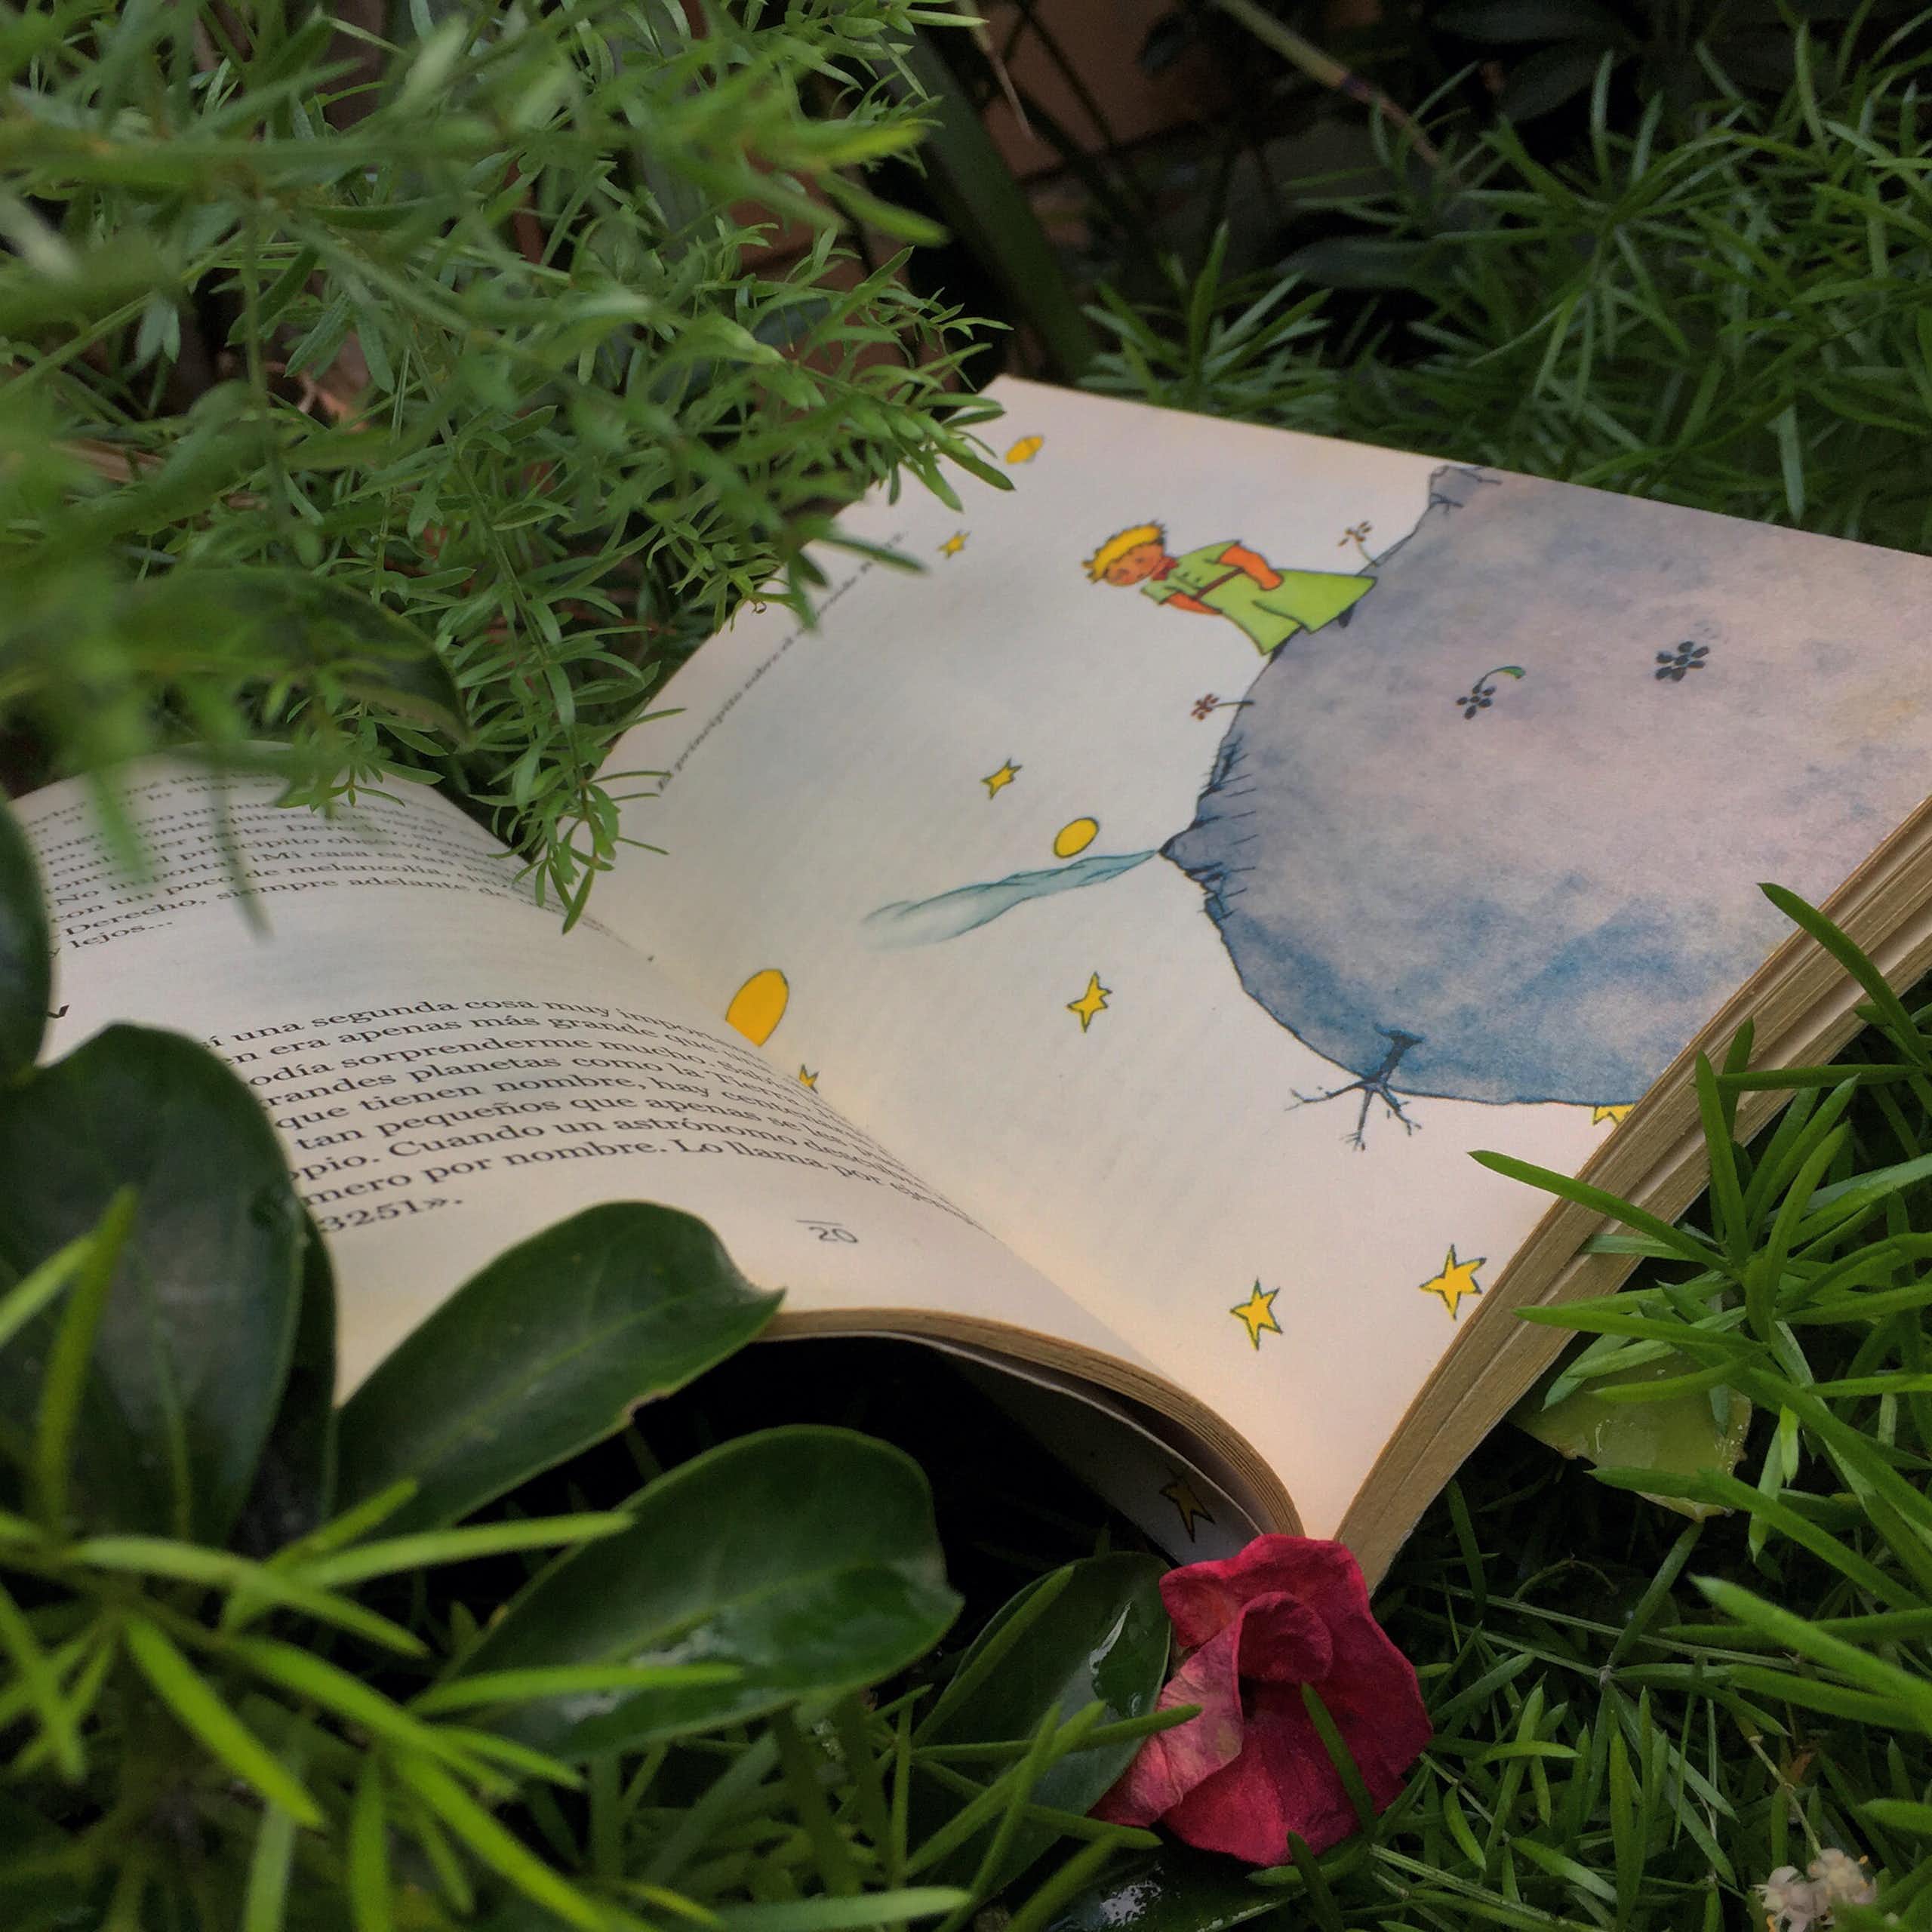 Le livre _Le Petit Prince_ ouvert dans l'herbe